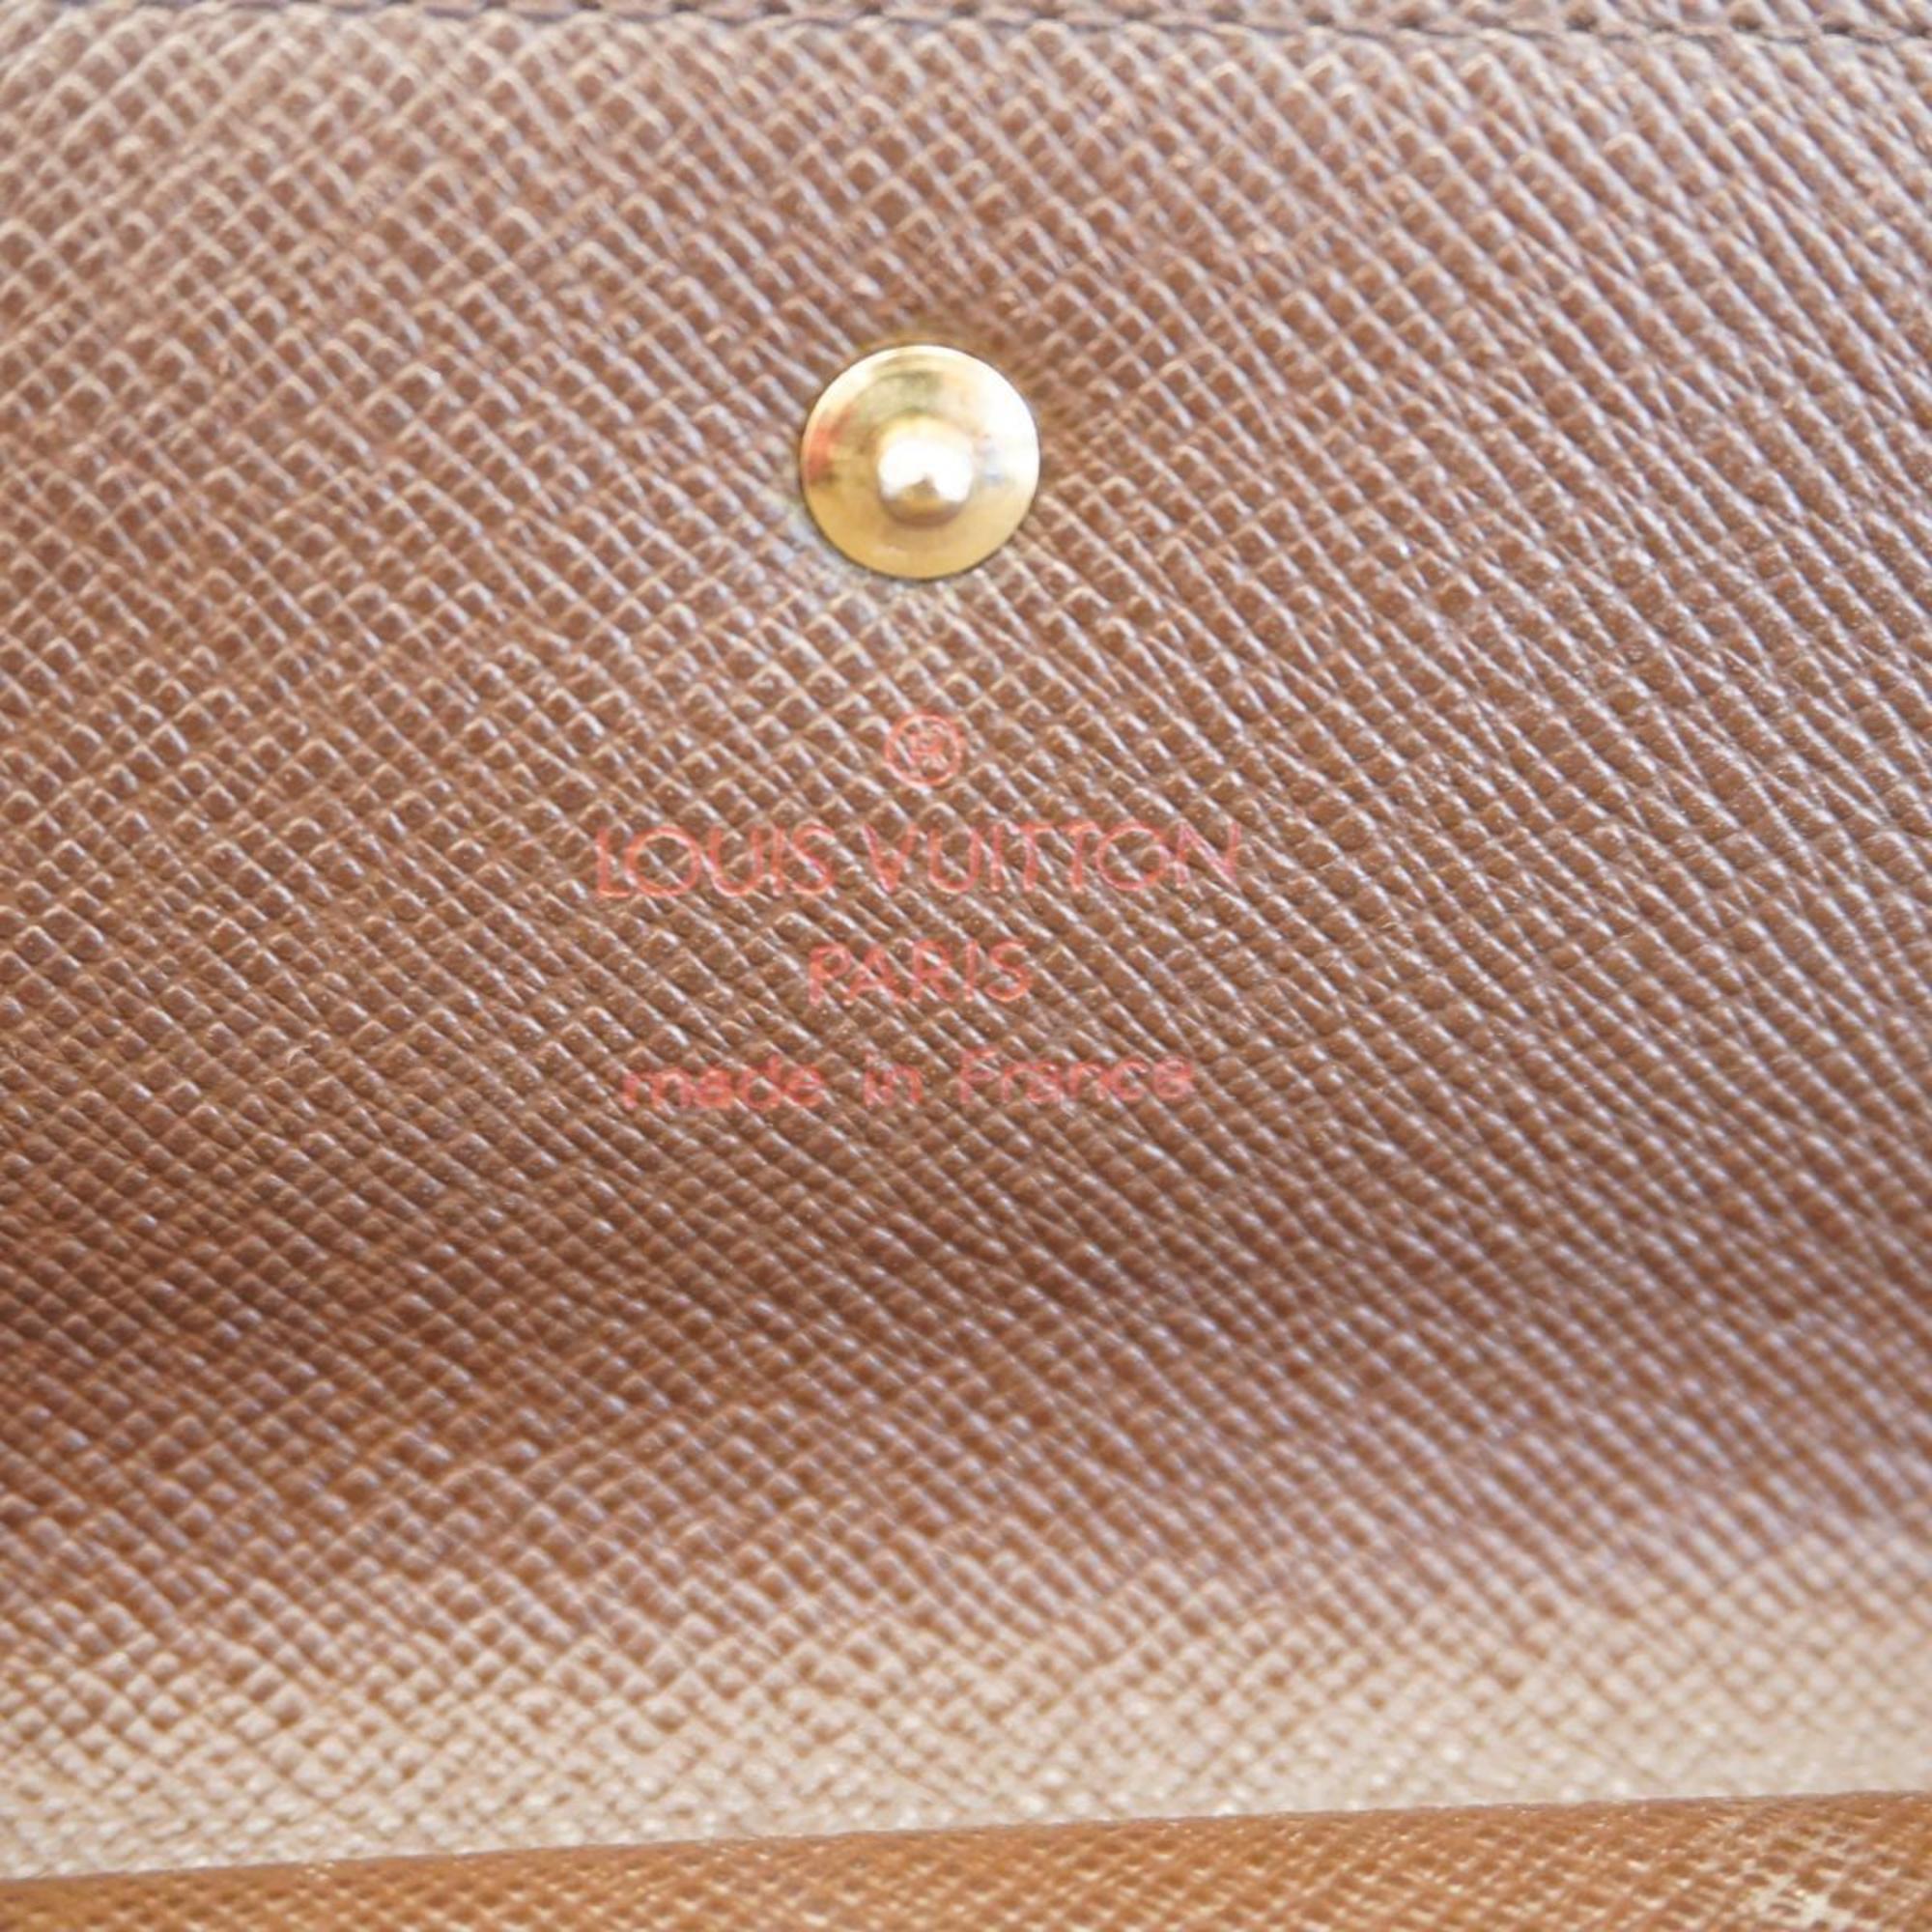 ルイ・ヴィトン(Louis Vuitton) ルイ・ヴィトン 長財布 ダミエ ポルトフォイユインターナショナル N61217 エベヌメンズ レディース